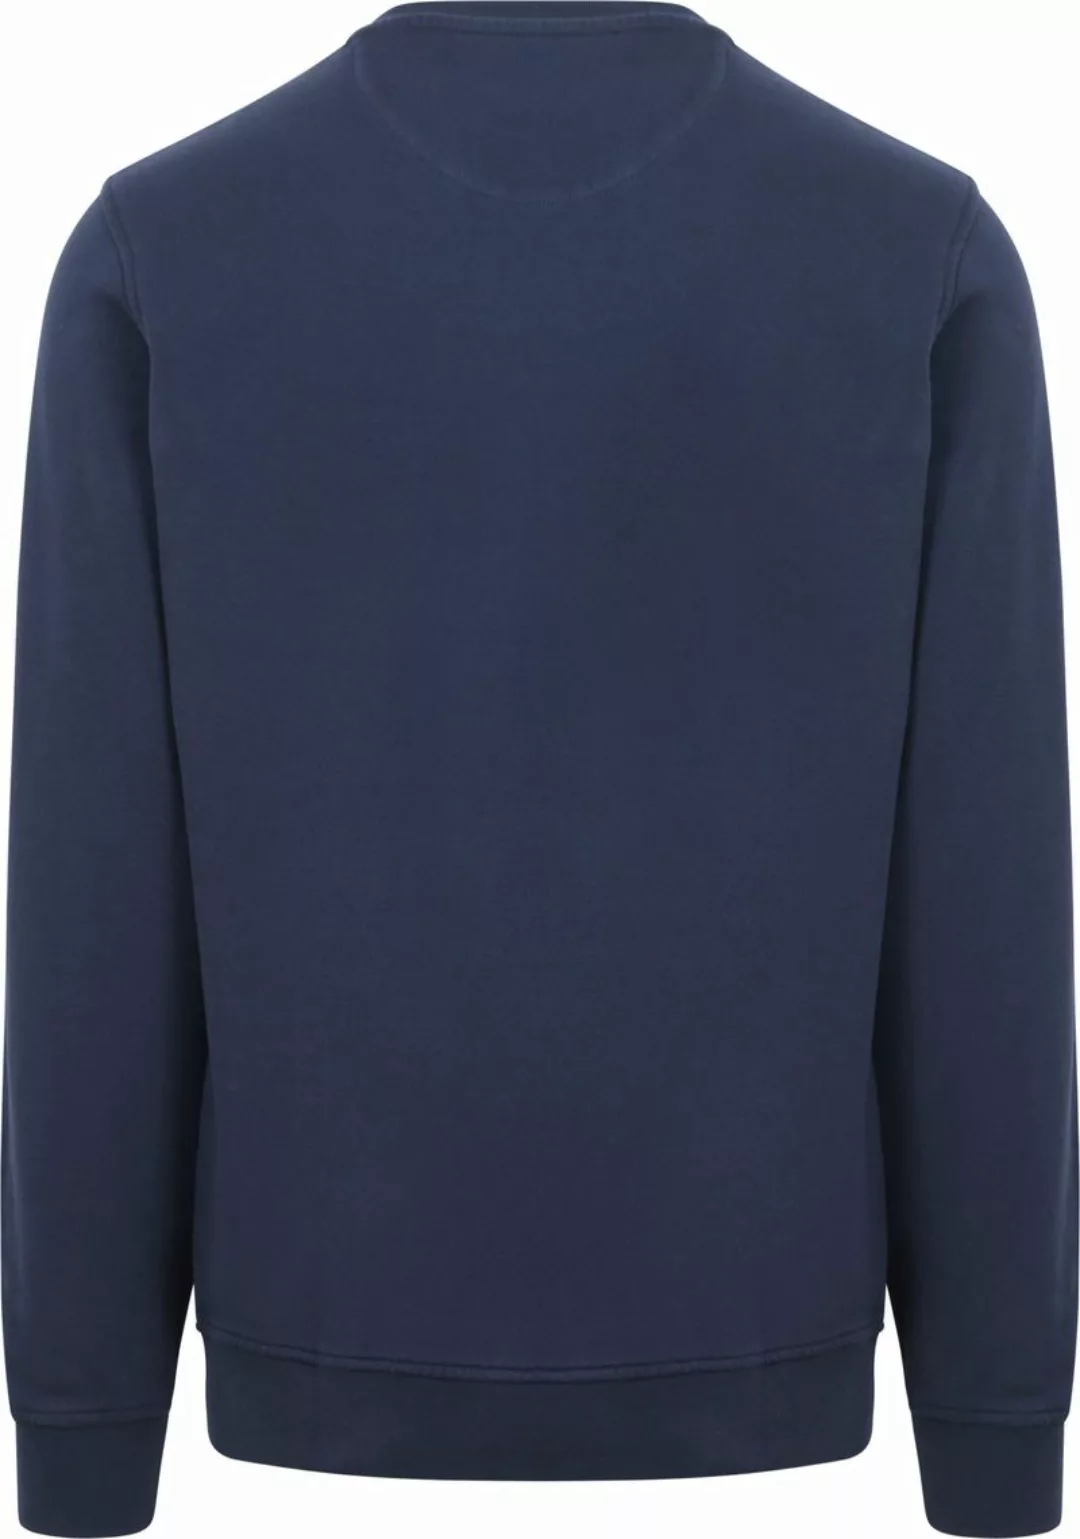 McGregor Essential Sweater Logo Navy - Größe XL günstig online kaufen